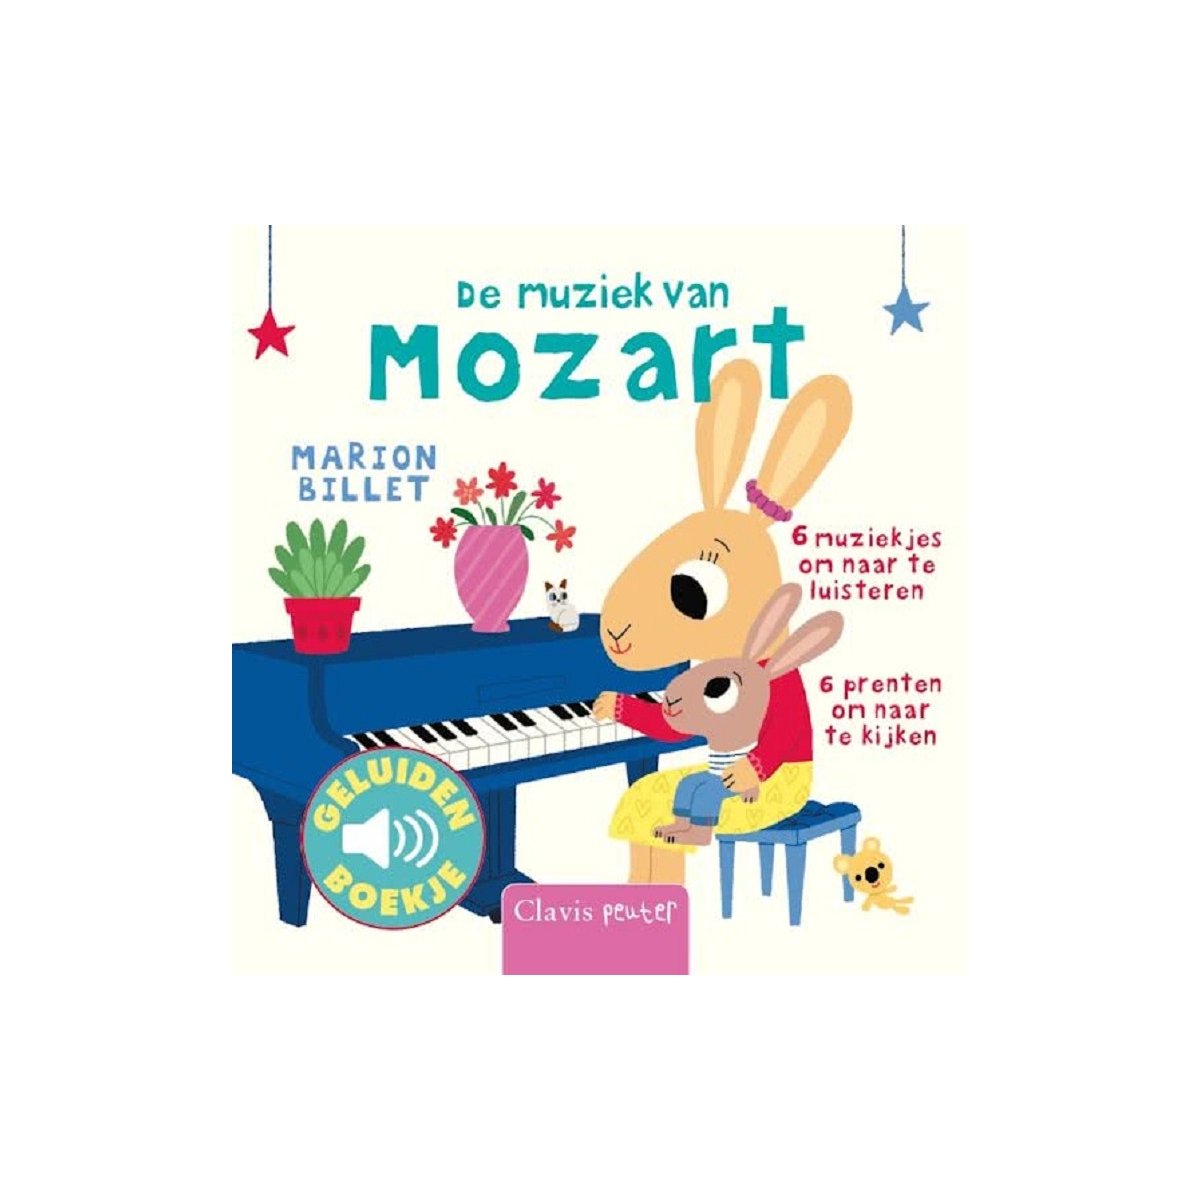 De muziek van Mozart - Marion Billet